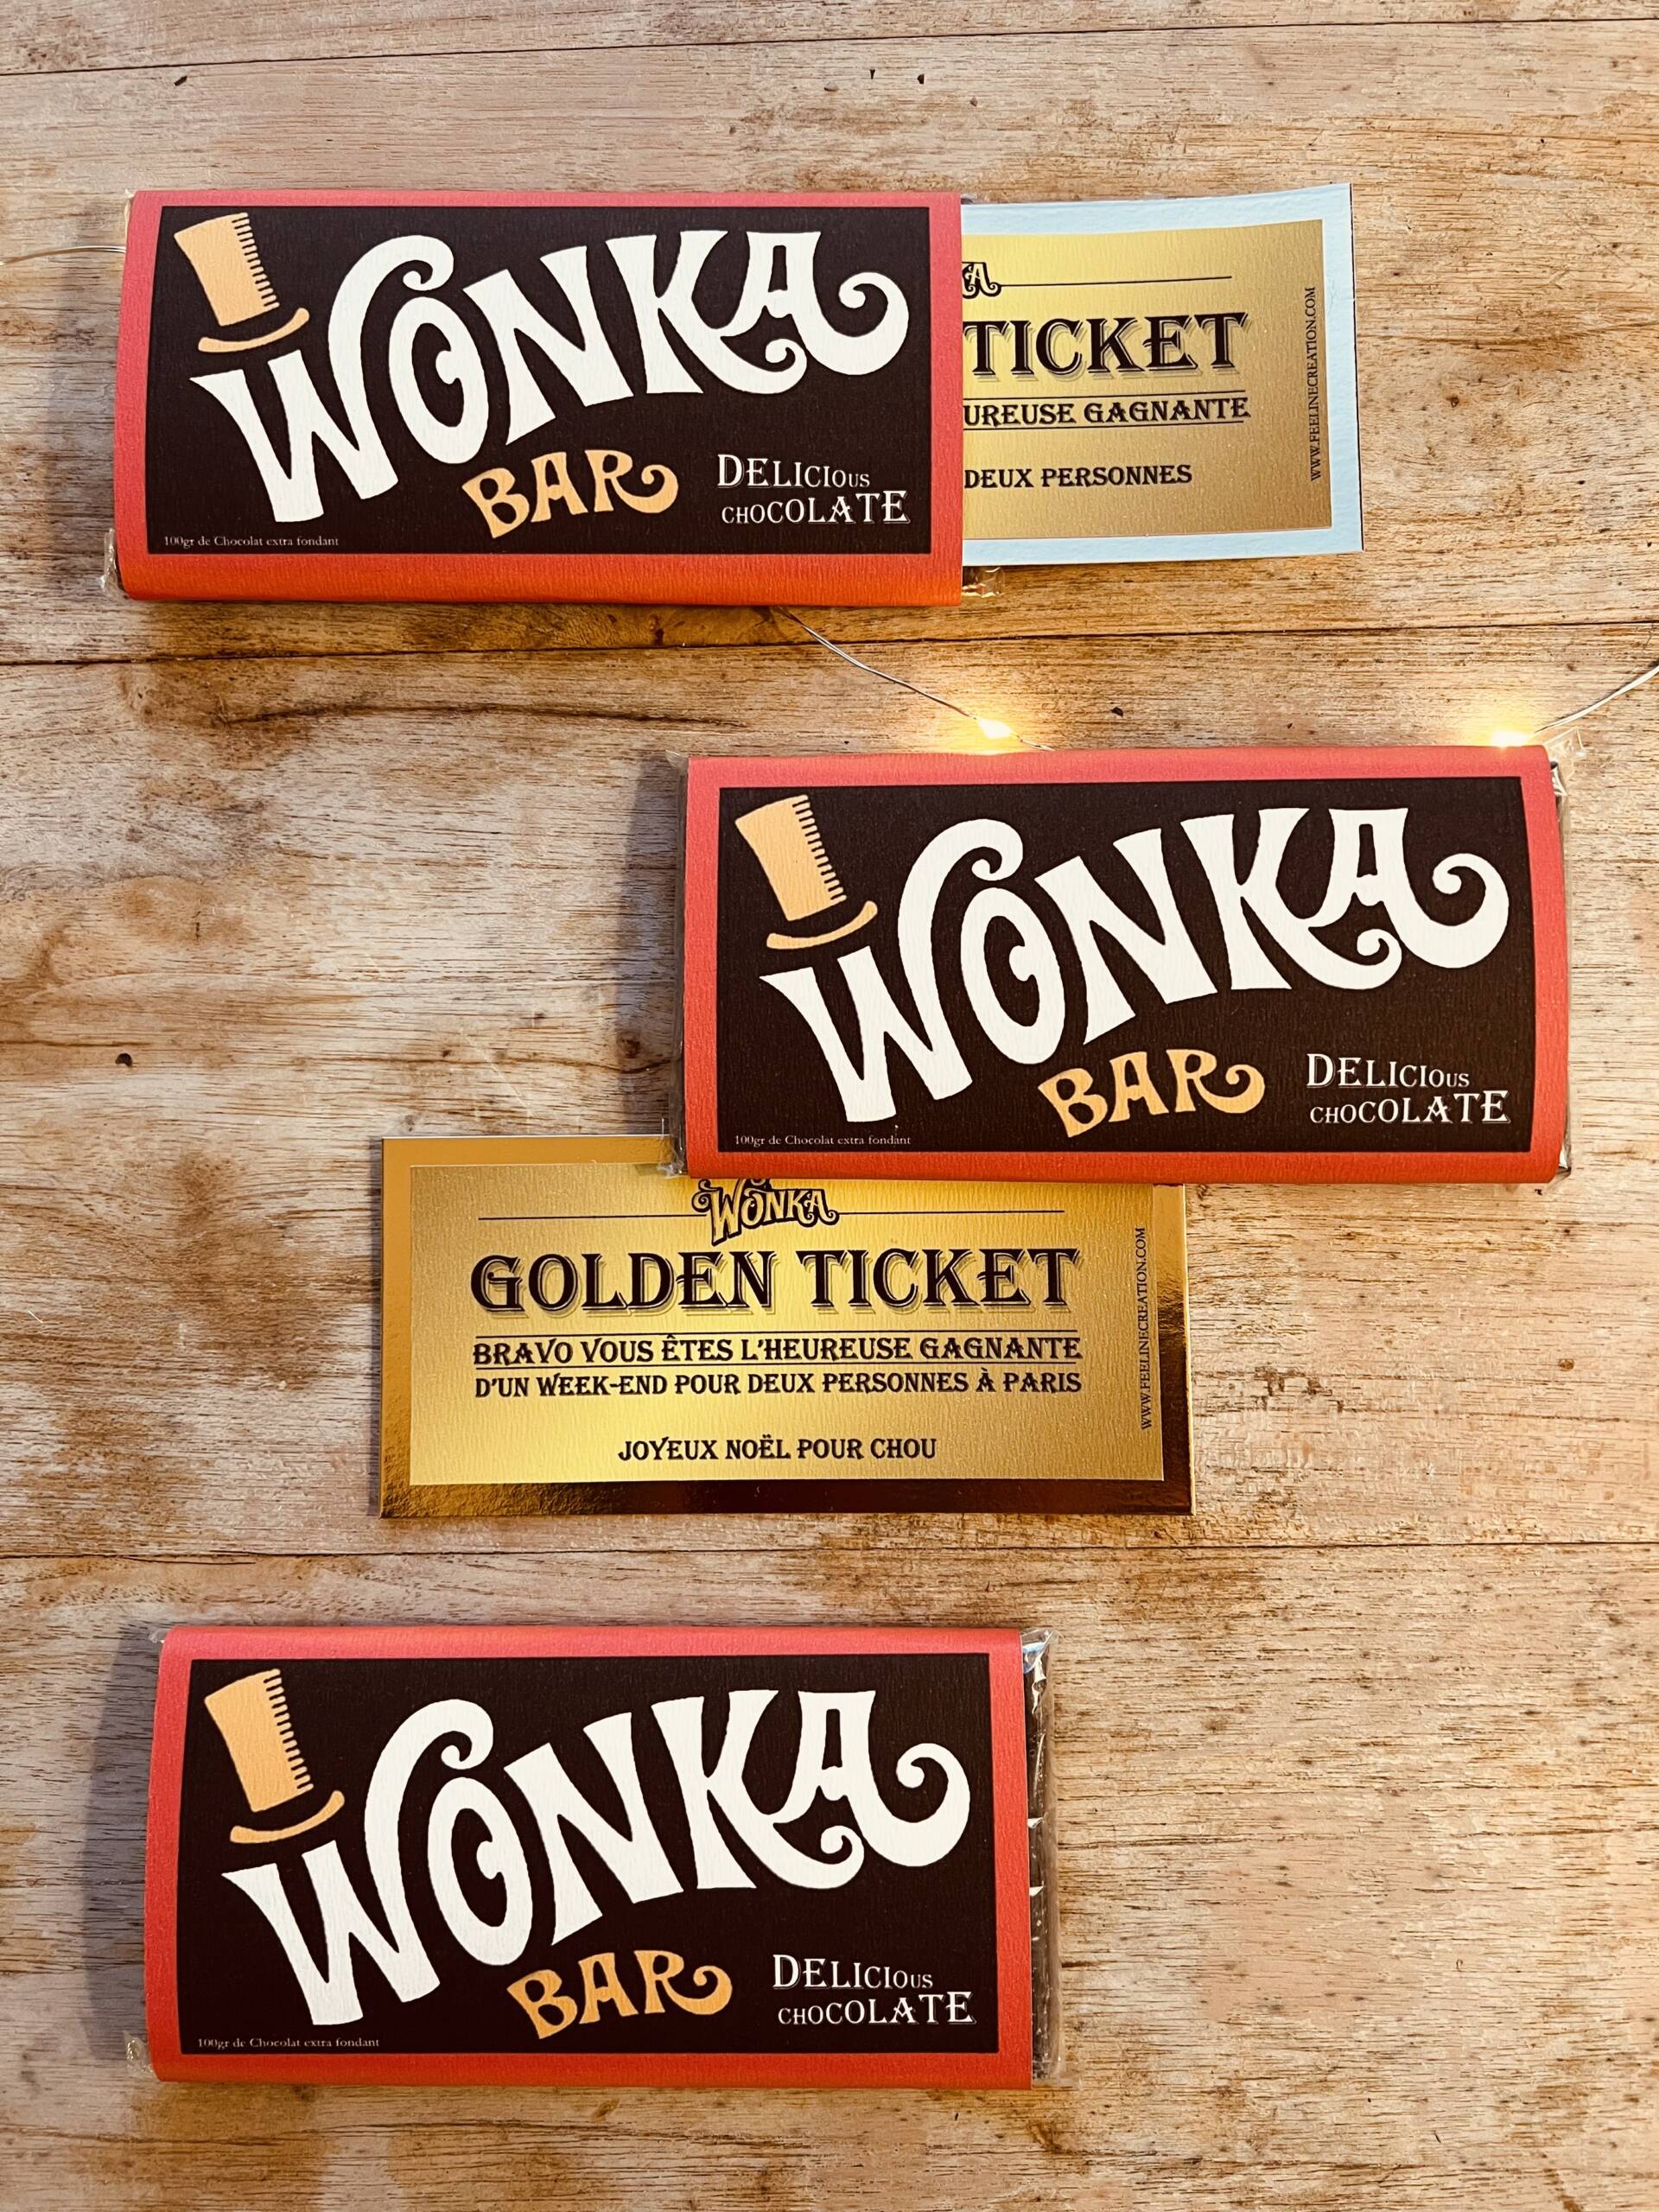 La Wonka bar de Willy à venir personnaliser sur notre site